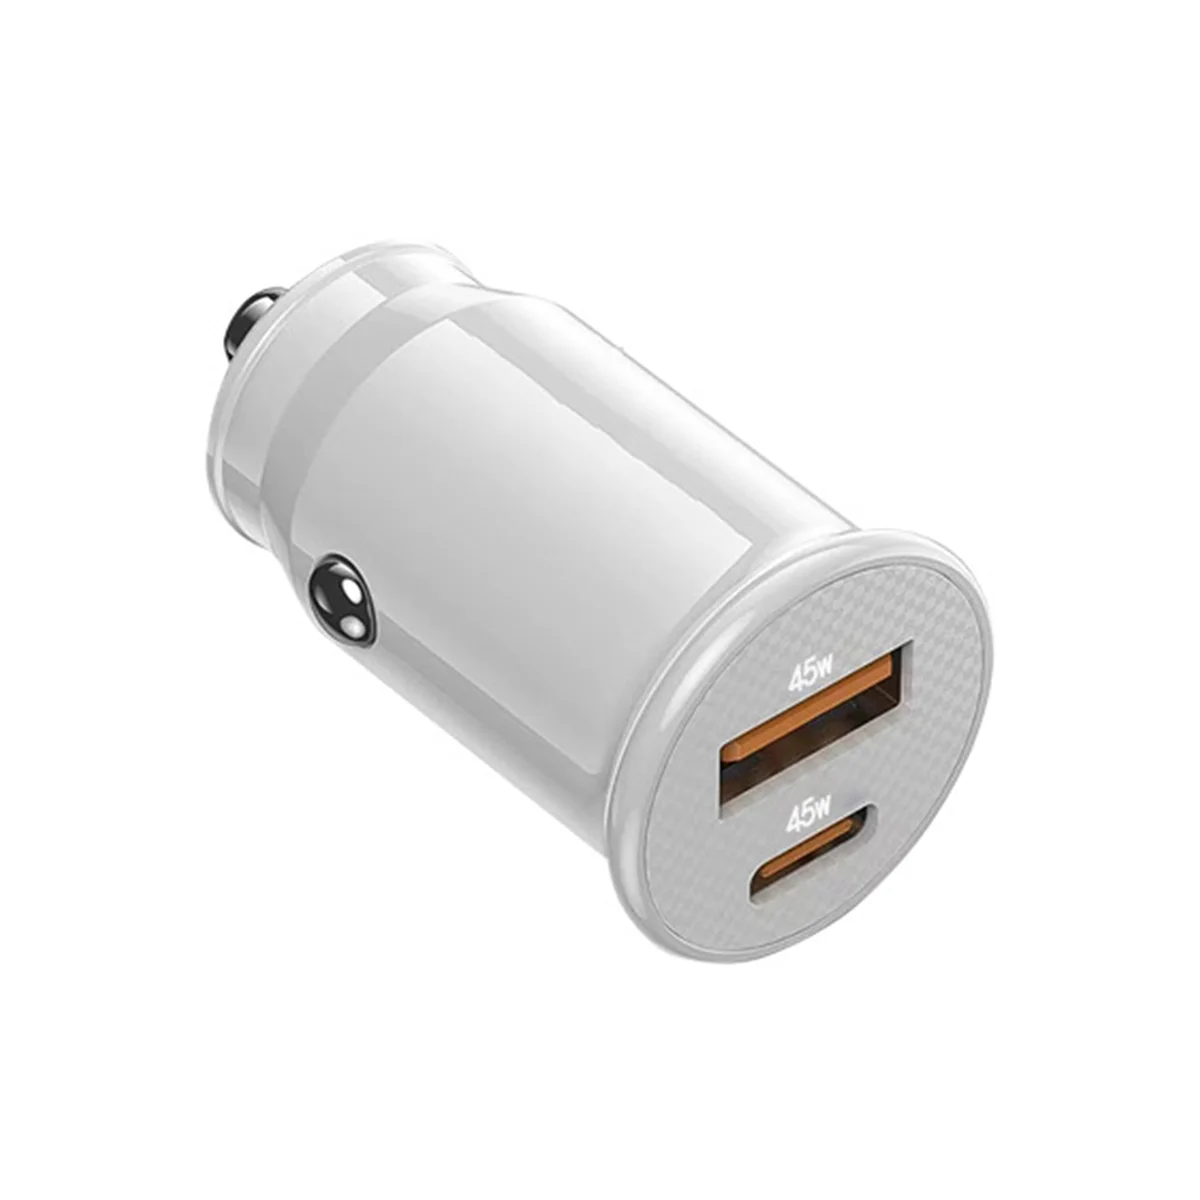 Автомобильное зарядное Устройство Mini USB Quick Charge USB C Автомобильное Зарядное Устройство QC 4.0 45W 5A Type PD Быстрая Зарядка Автомобильного Зарядного устройства Для телефона (Черный Яркий)